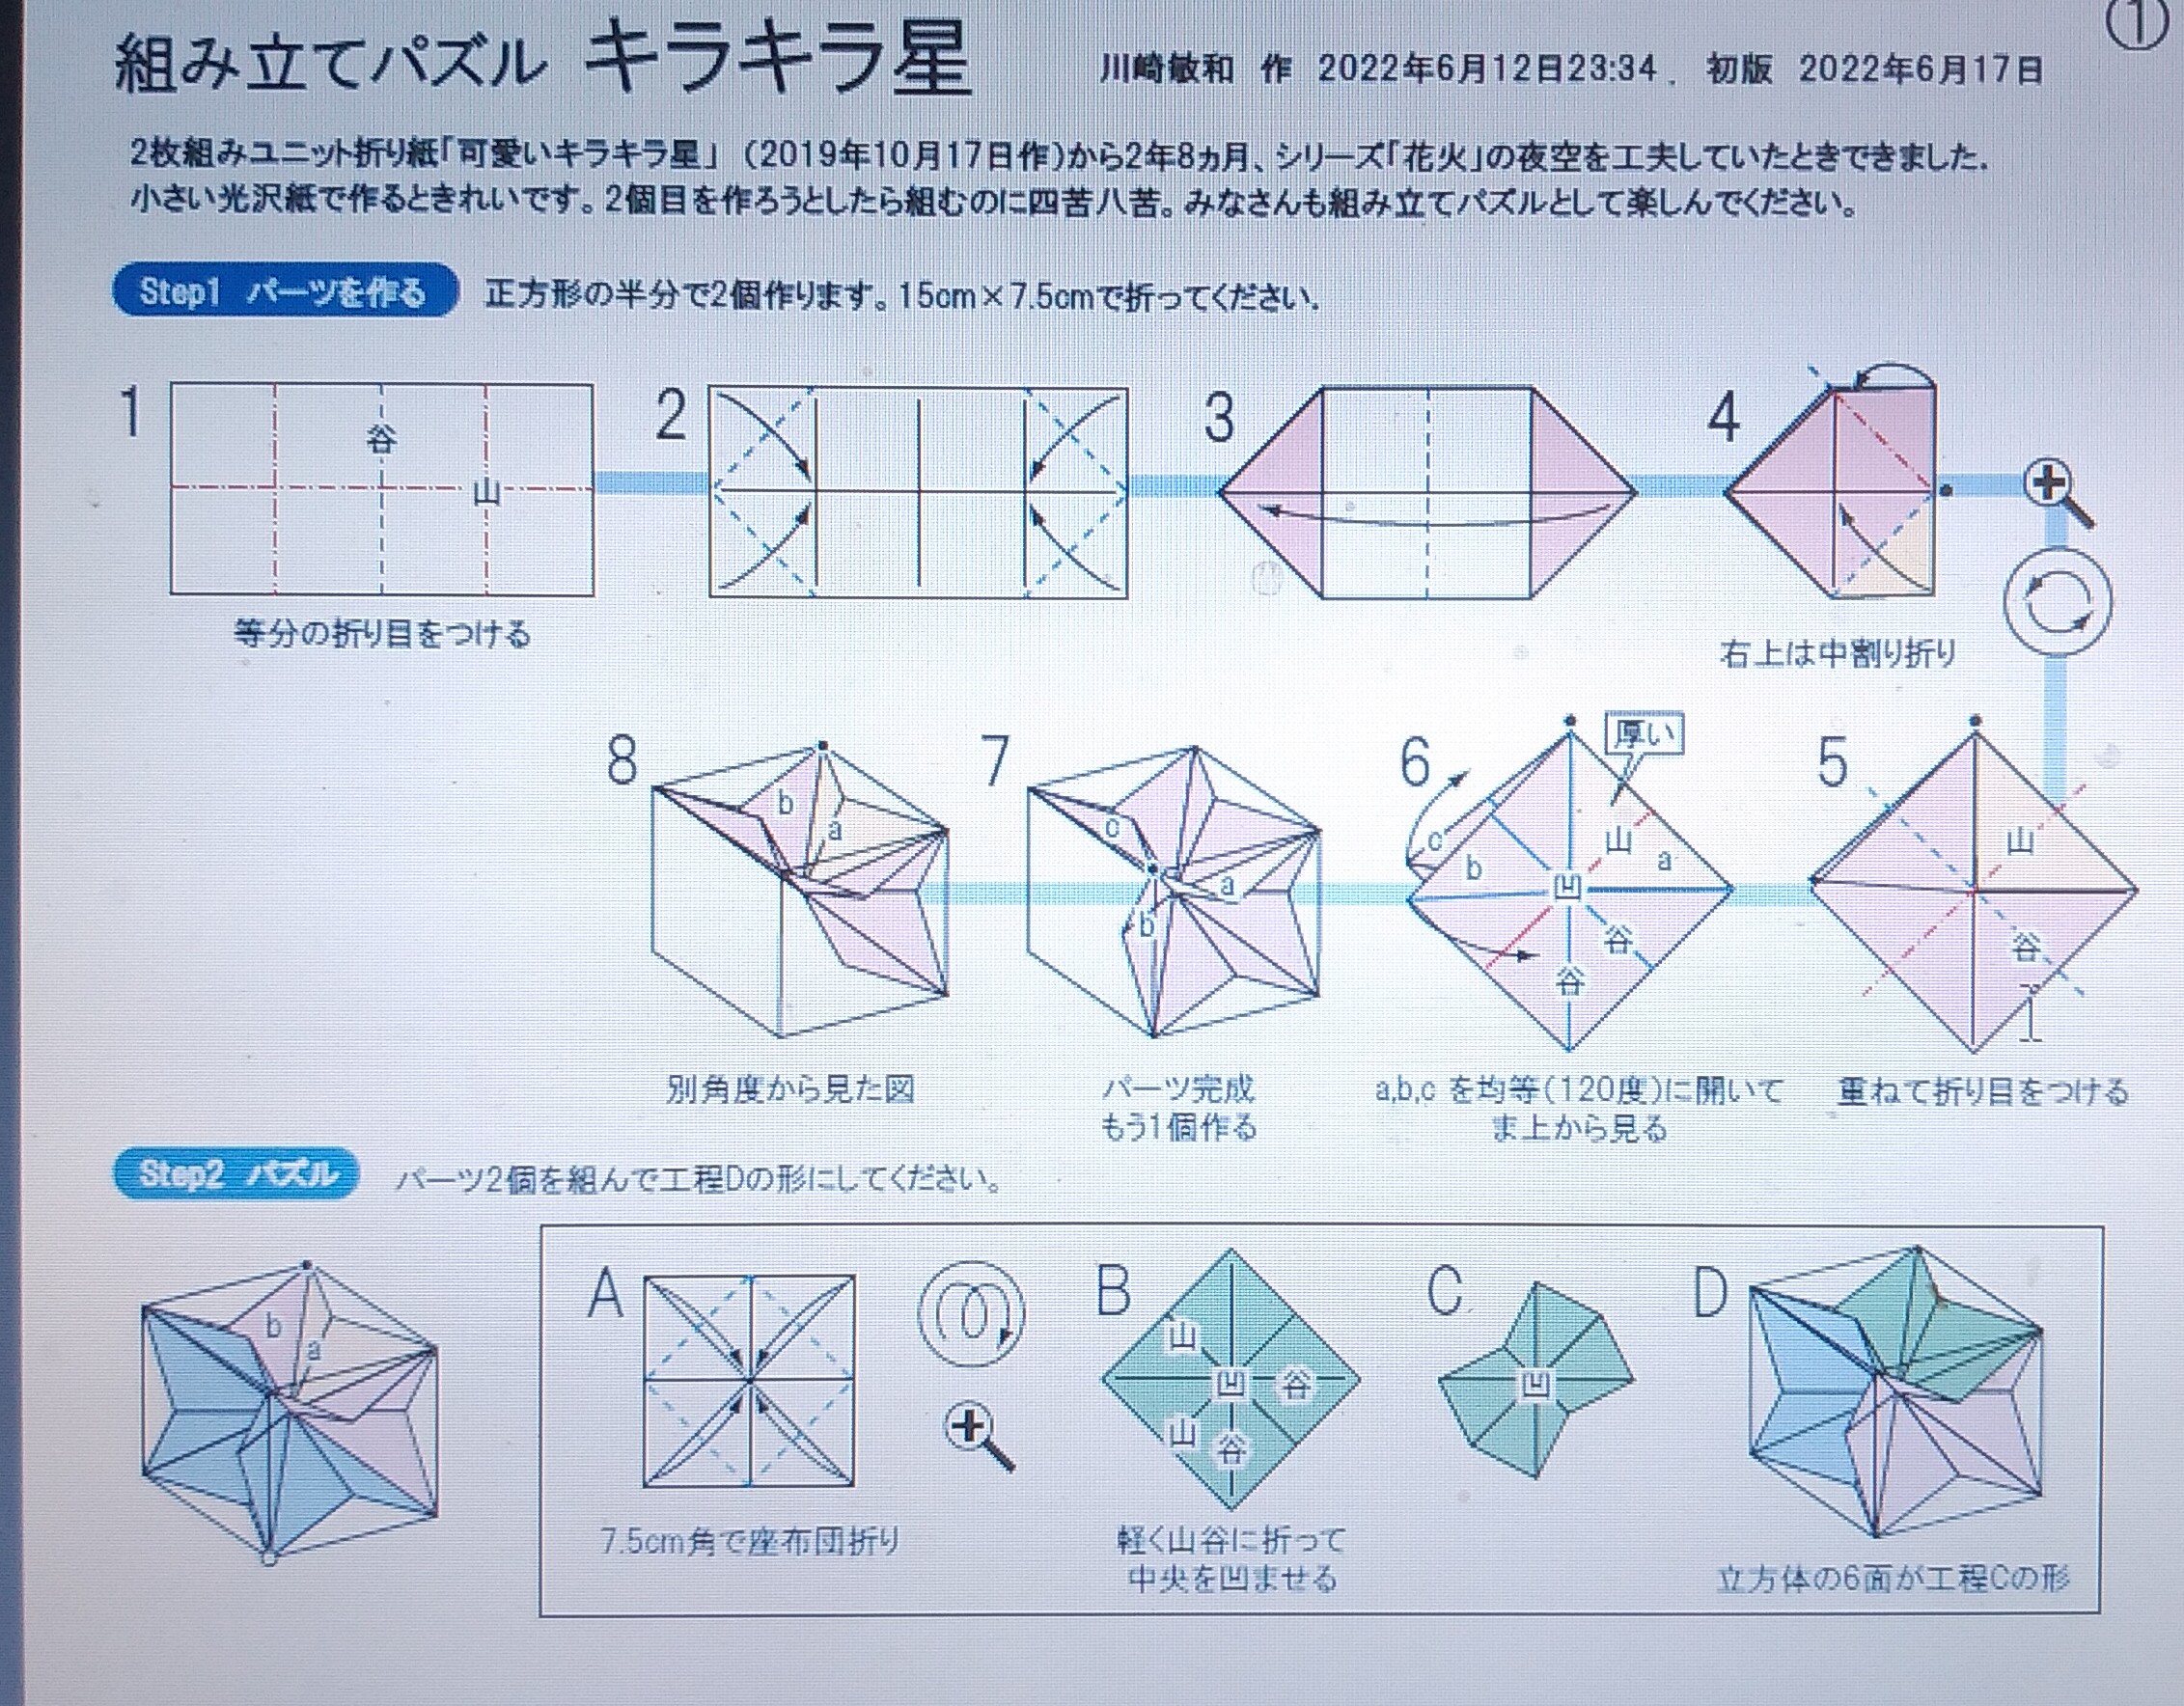 2022/06/19(Sun) 12:31「組み立てパズル キラキラ星」川崎敏和
（創作者 Author：川崎敏和,　製作者 Folder：川崎敏和,　出典 Source：2022折り紙キット）
 パーツを組むパズルで、183号のユニット折り紙「可愛いキラキラ星」に似たものを作ります。